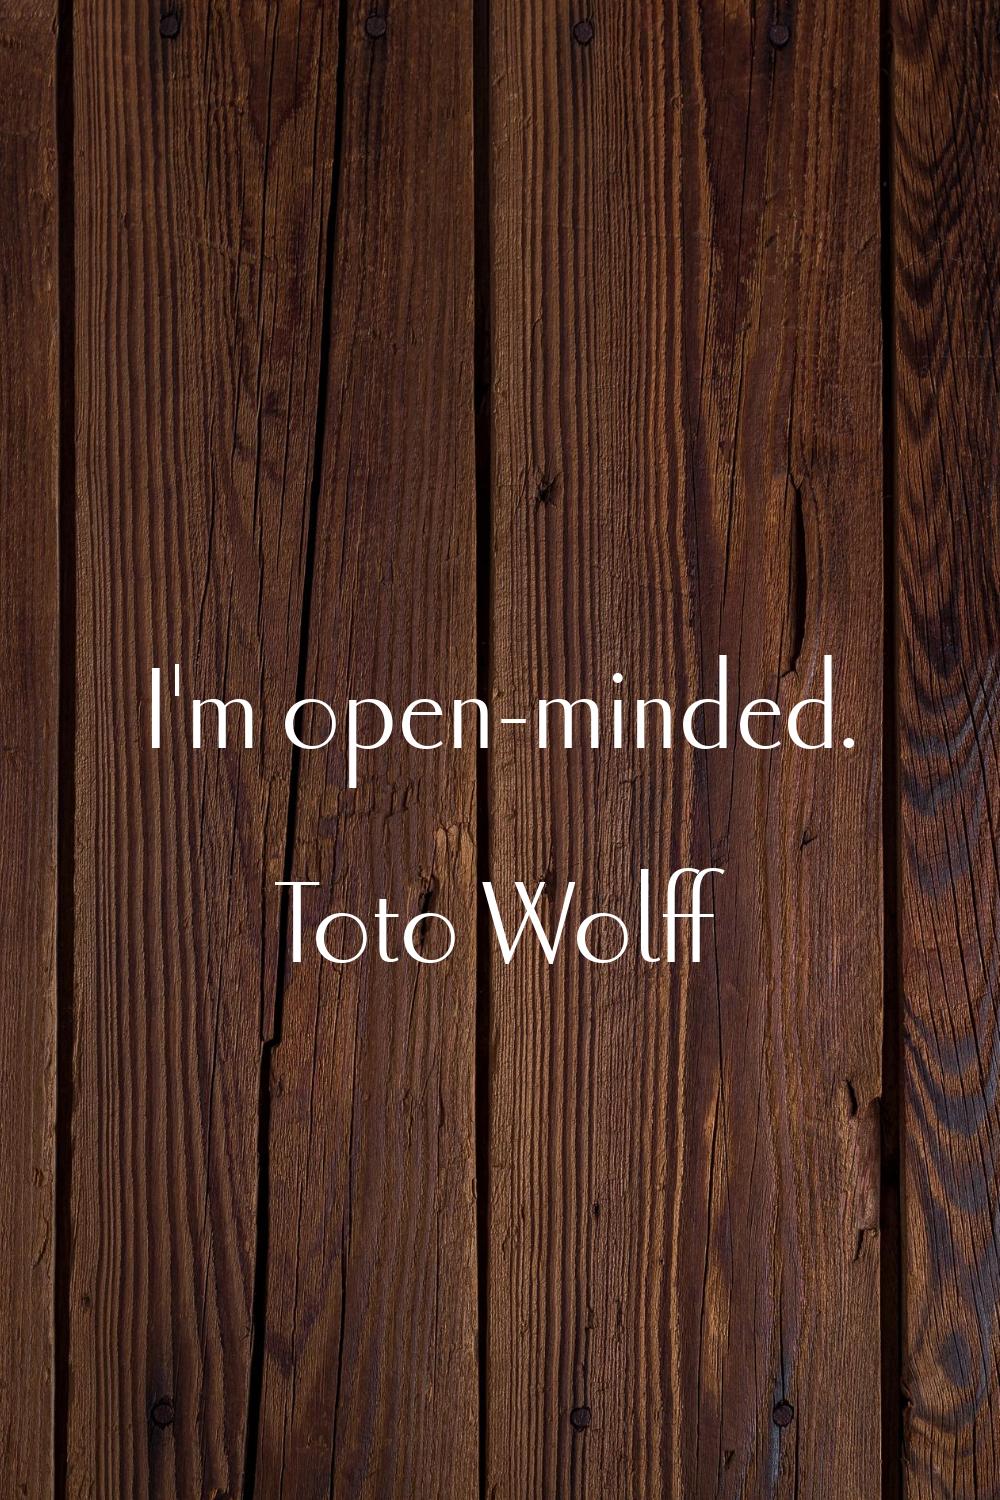 I'm open-minded.